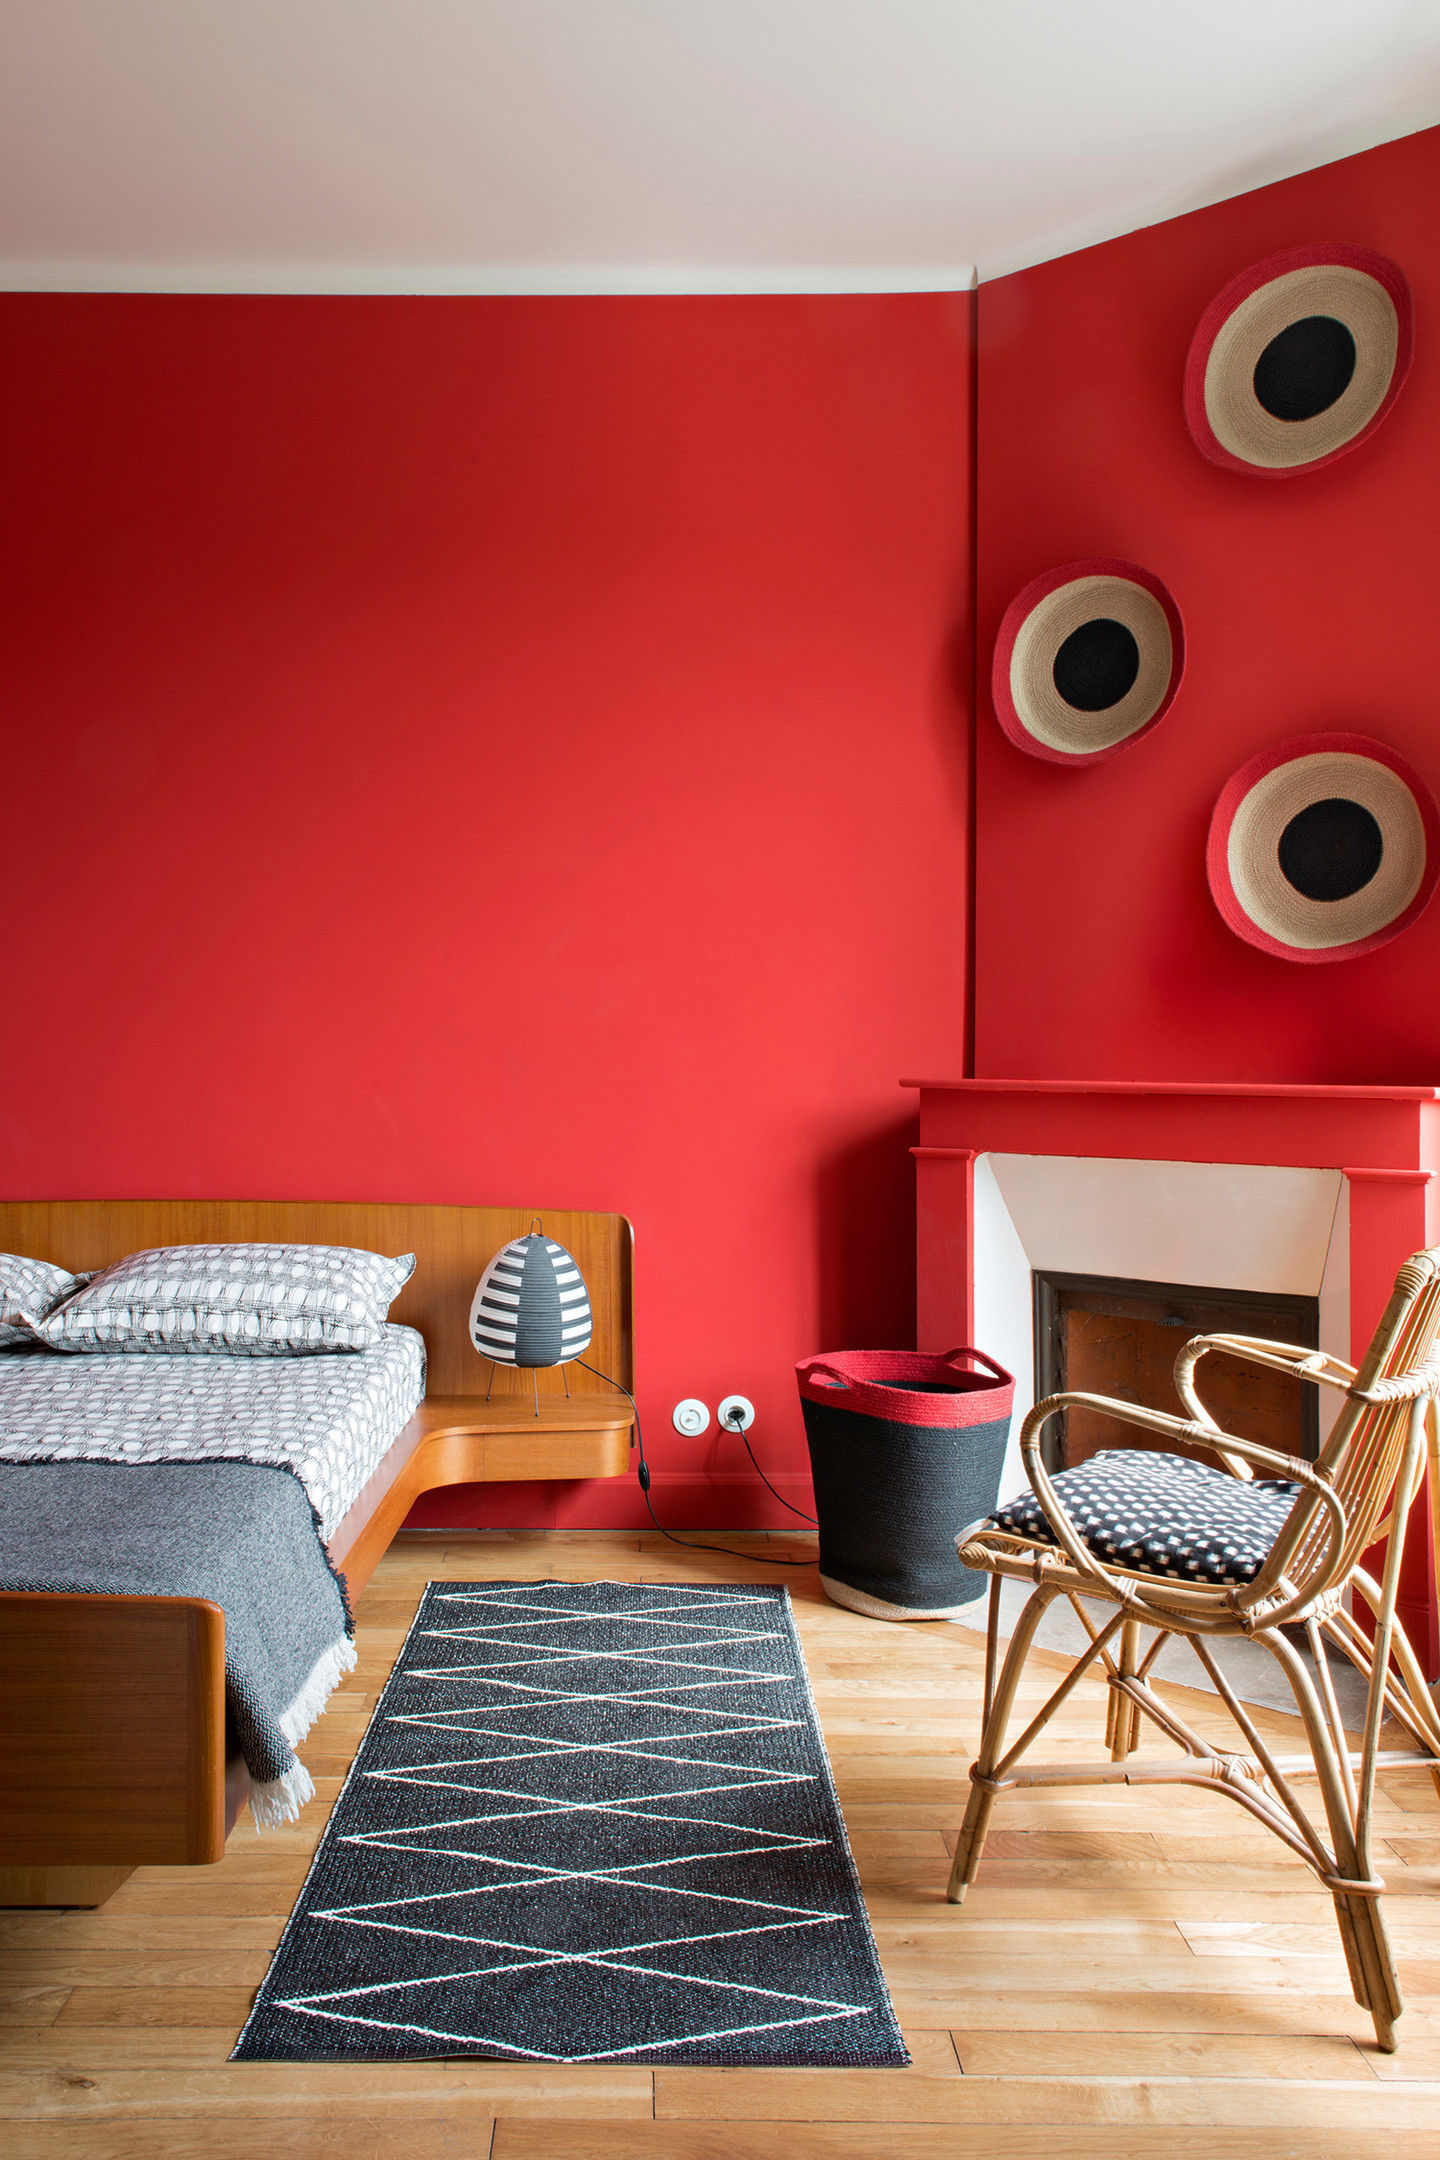 Nếu những phòng ngủ trên lựa chọn gam màu dịu nhẹ thì ở đây, căn phòng bừng sáng với sắc đỏ ấm áp, đầu giường gỗ tích hợp táp đầu giường và ghế mây tuyệt đẹp!